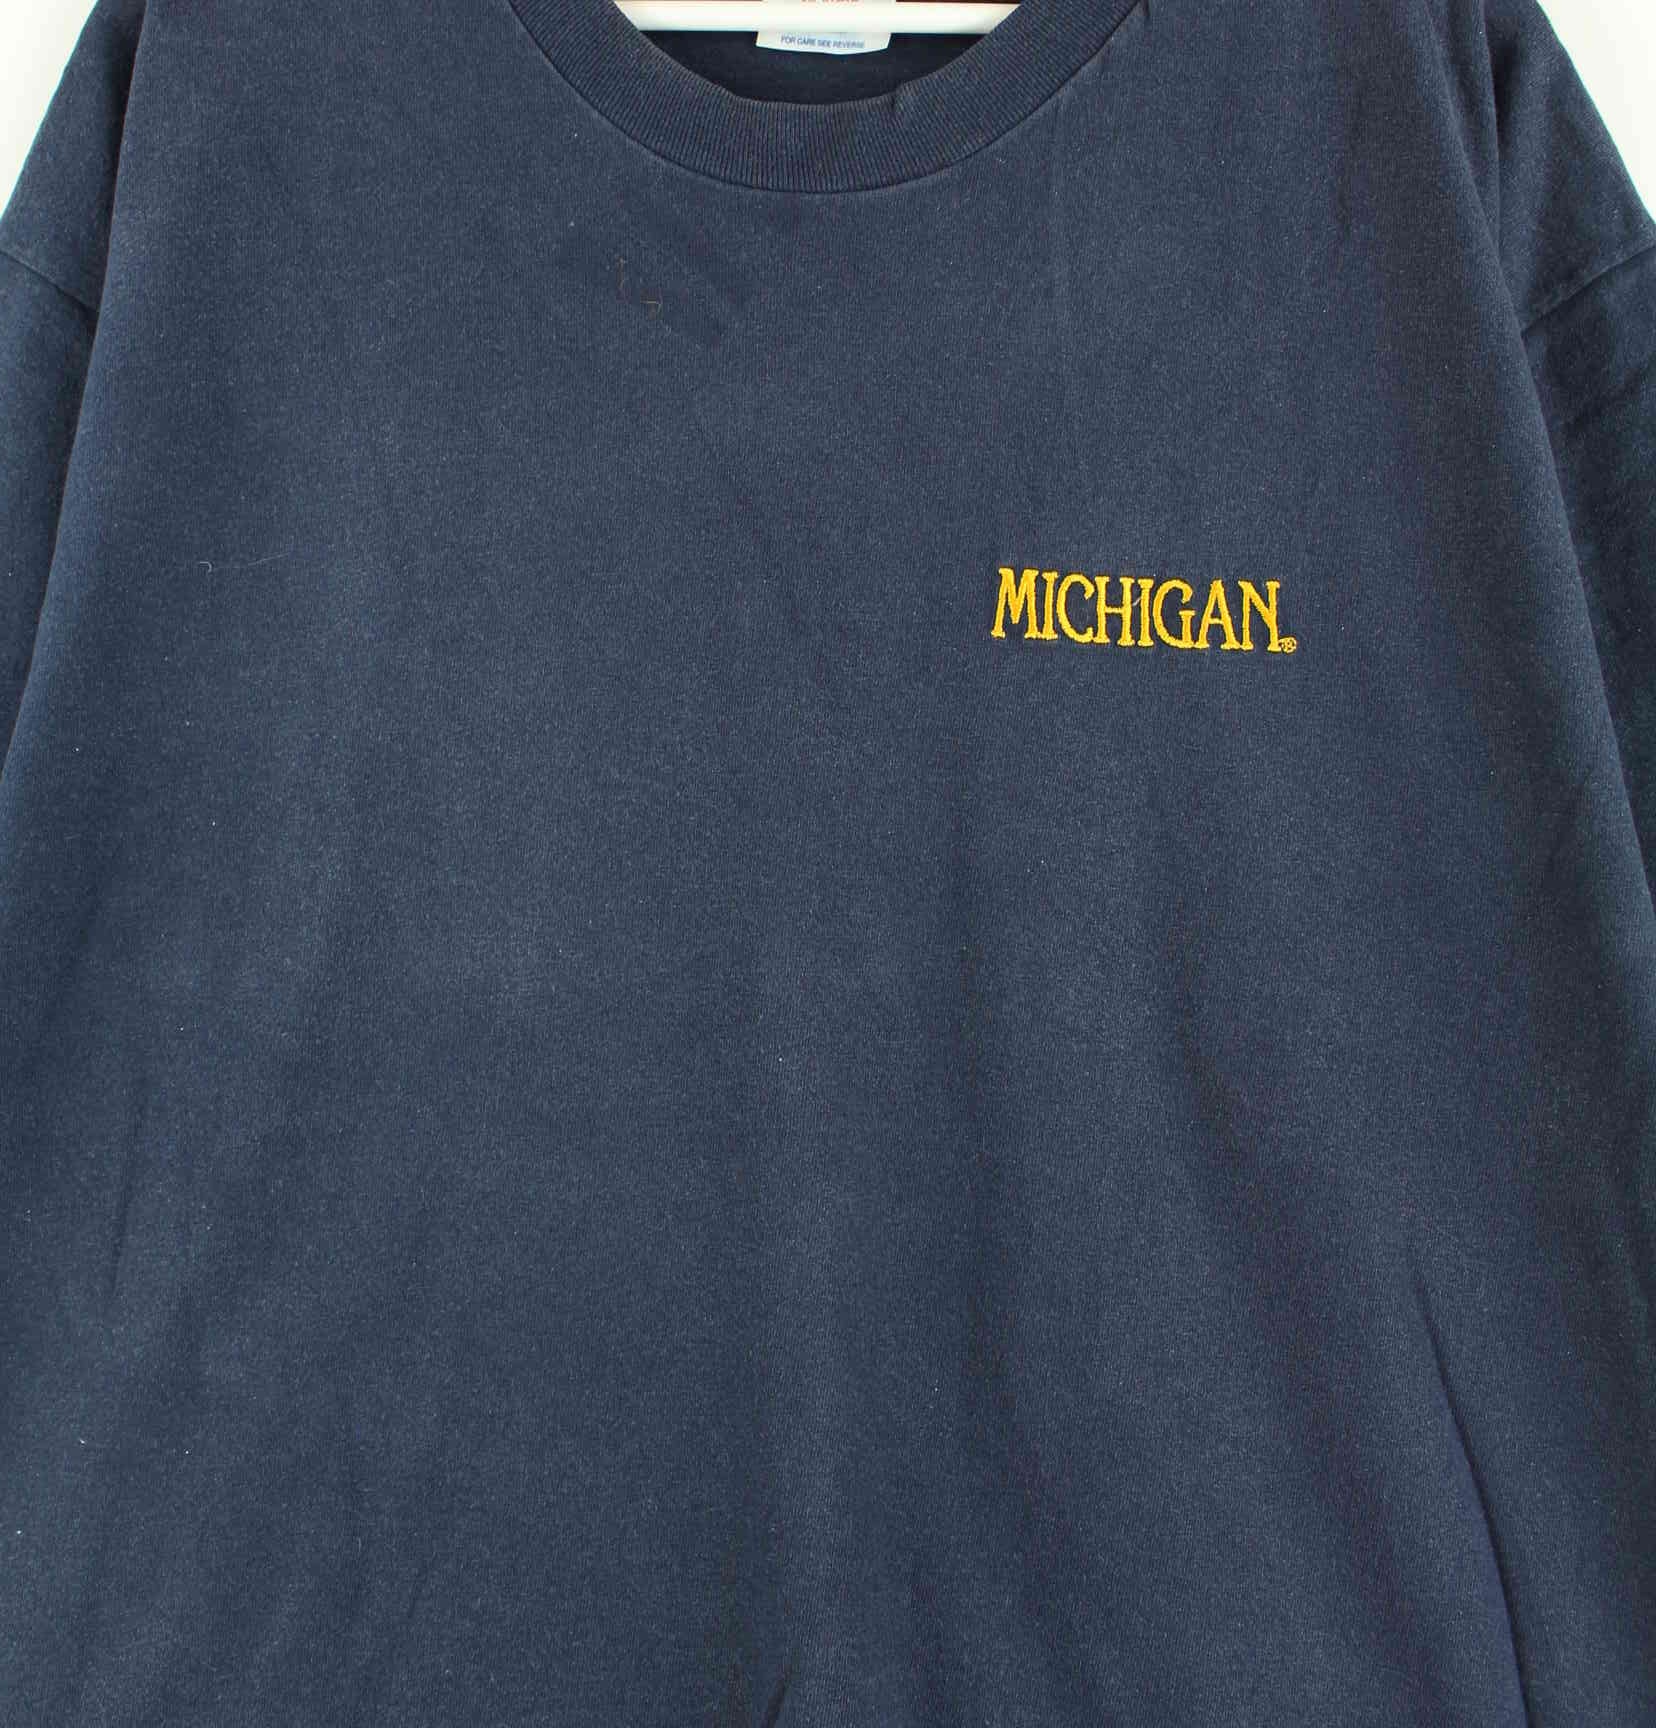 Champion Michigan Embrodiered Single Stitched T-Shirt Blau XL (detail image 1)